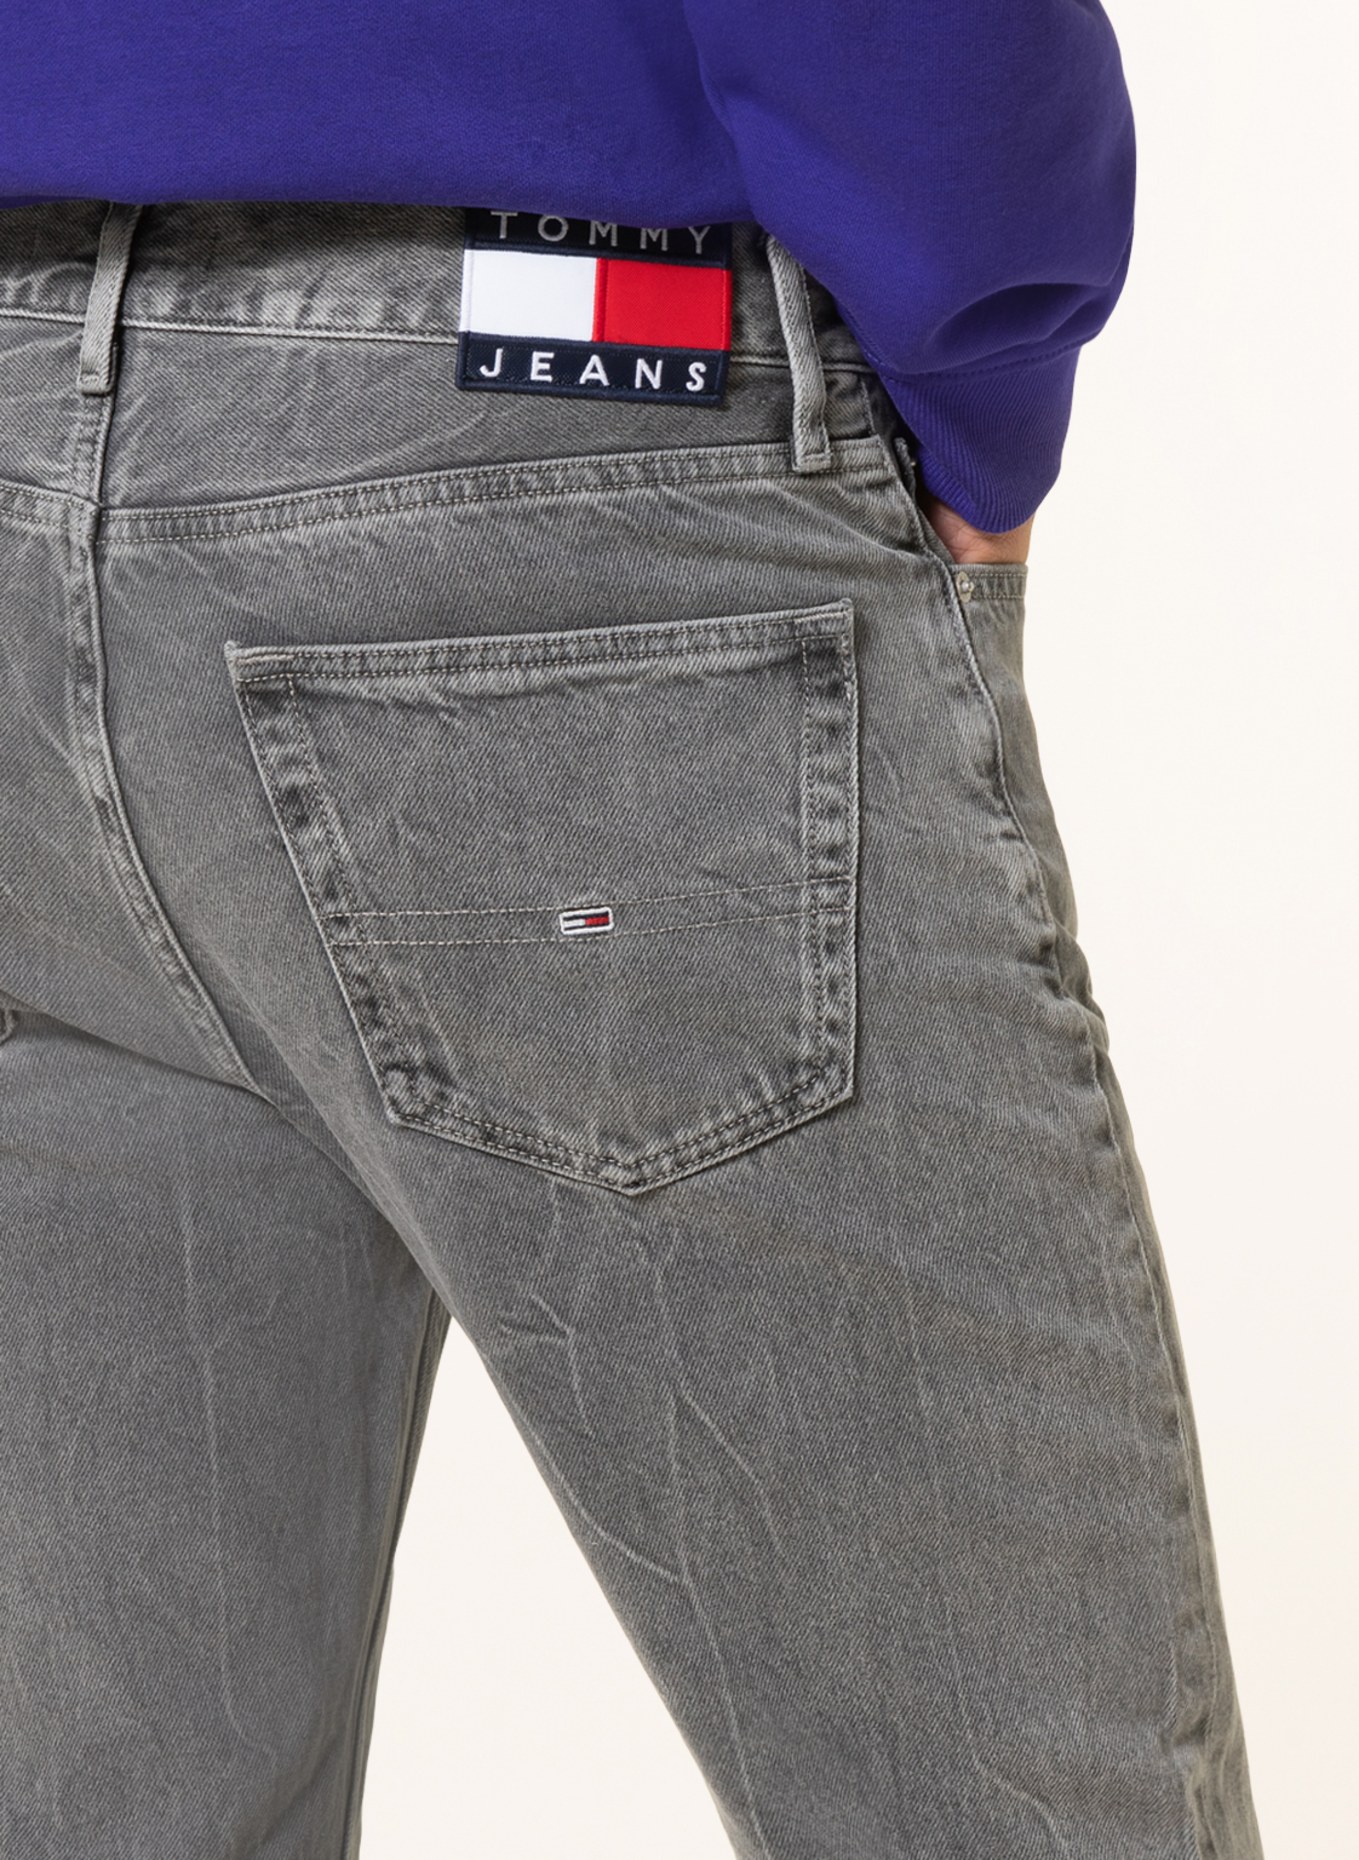 TOMMY JEANS Jeans tapered fit , Color: 1BZ Denim Black (Image 5)